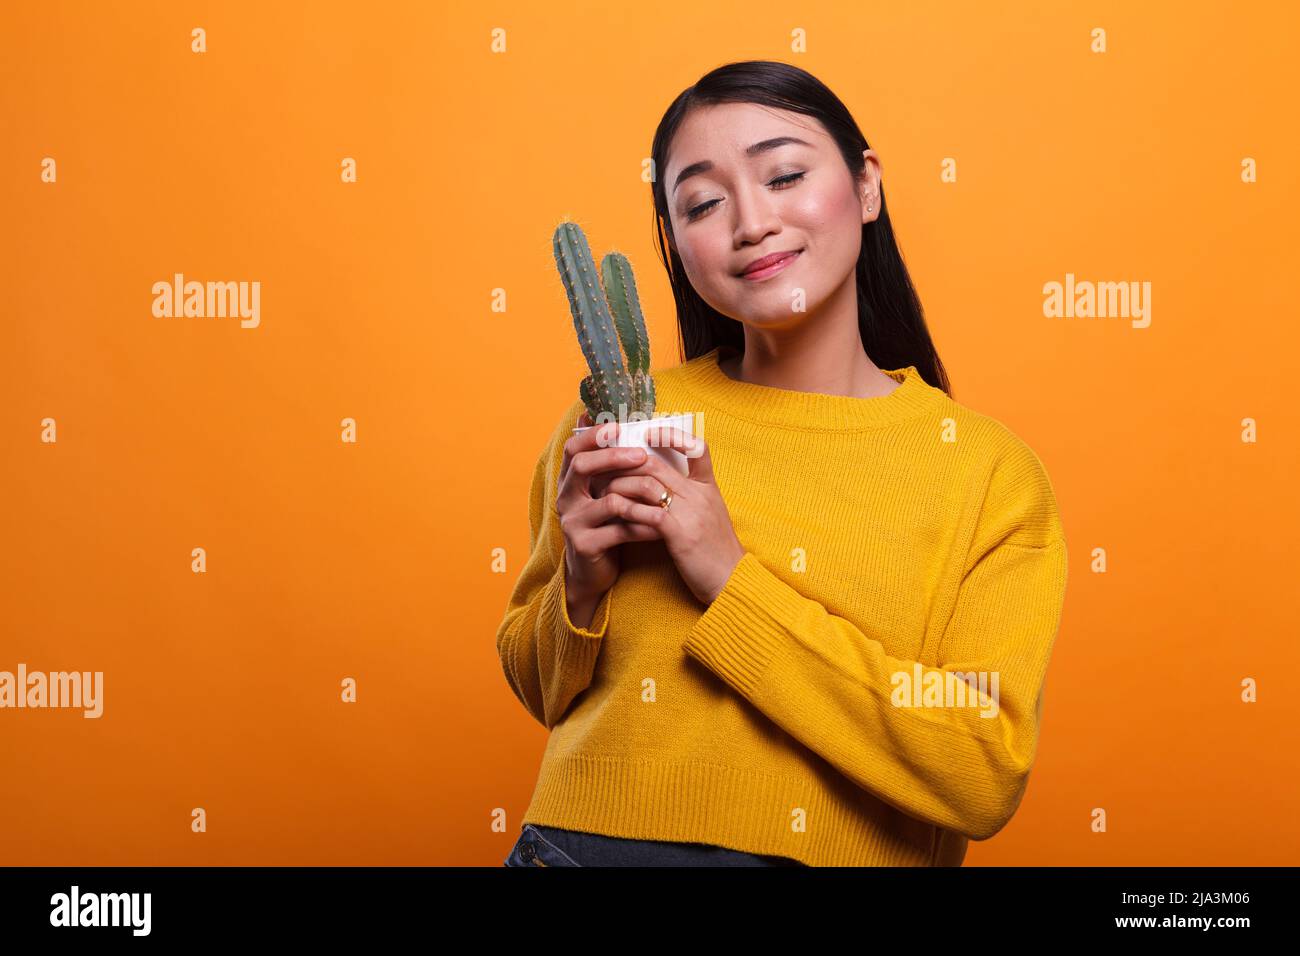 Positive lächelnde herzhaft asiatische Frau trägt gelben Pullover und hält Kaktuspflanze in den Händen. Attraktive schöne junge Erwachsene Person, die Glück und Fröhlichkeit auf orangefarbenem Hintergrund ausdrückt. Stockfoto